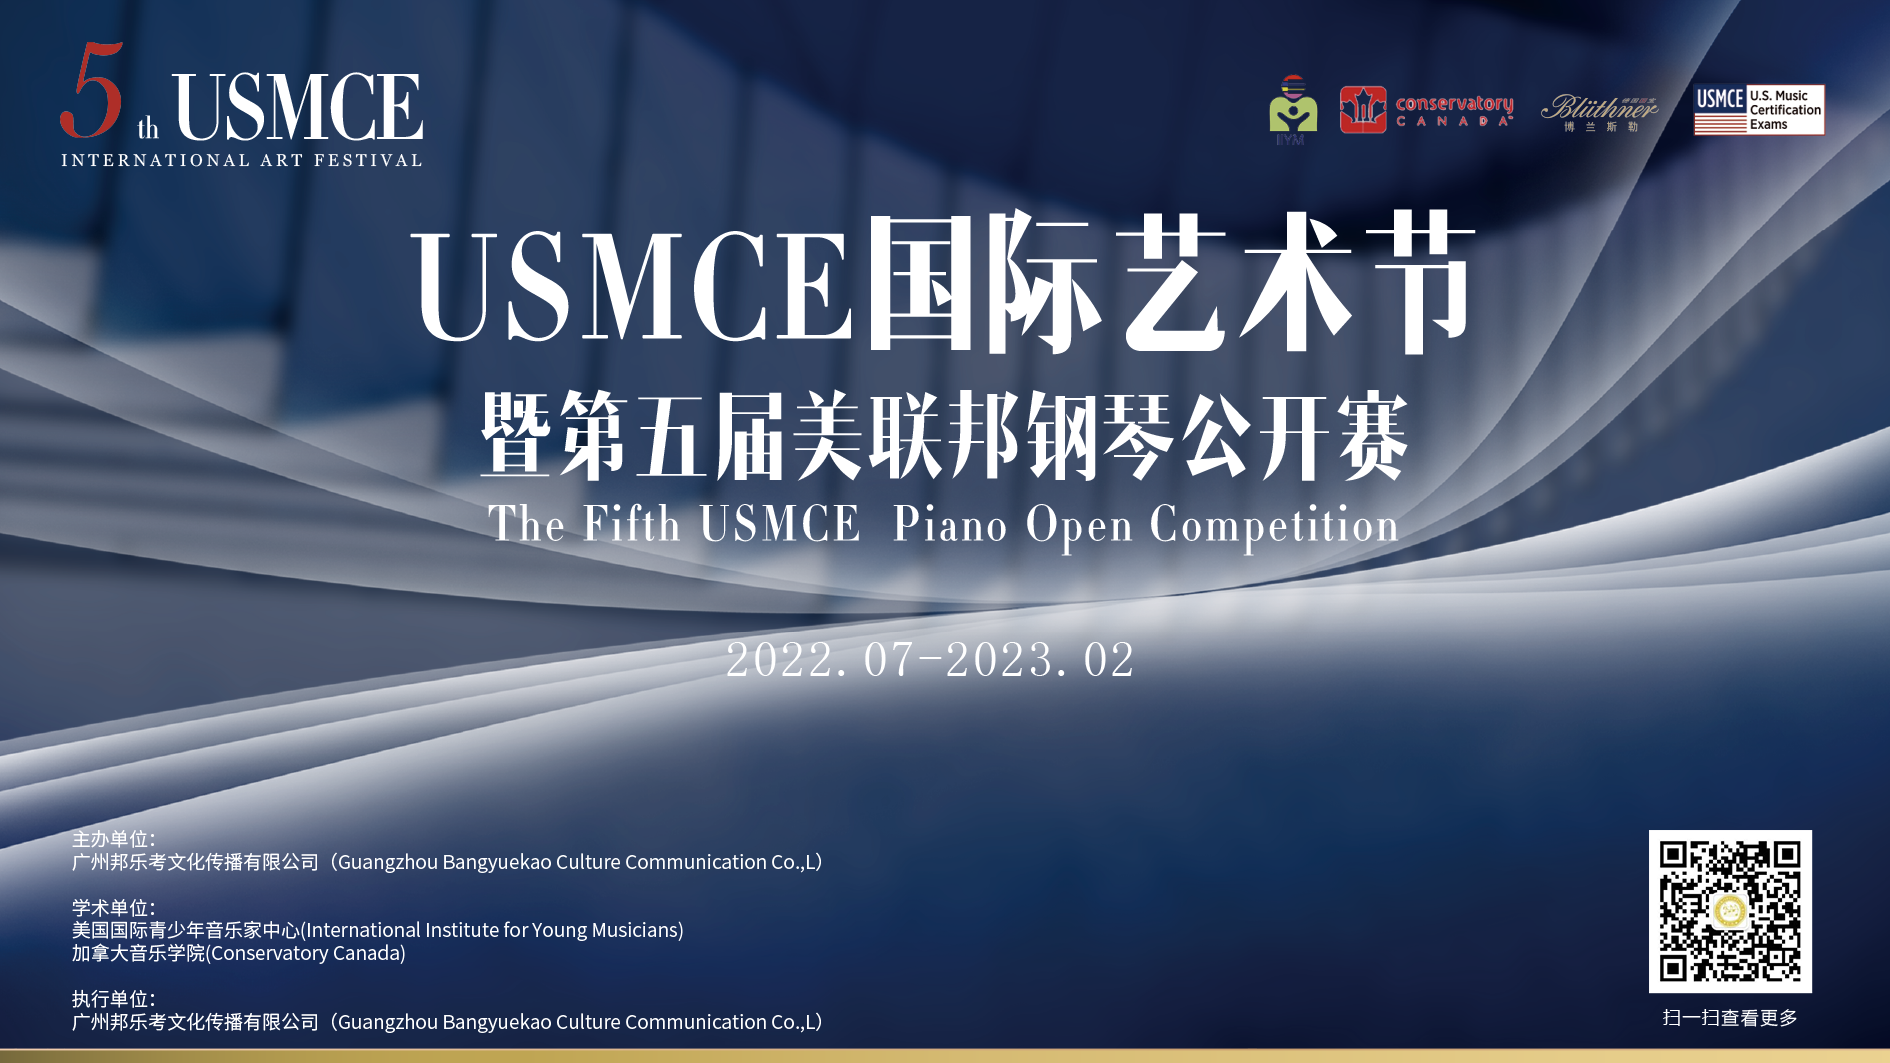 往届优秀选手风采| USMCE国际艺术节暨第五届美联邦钢琴公开赛！